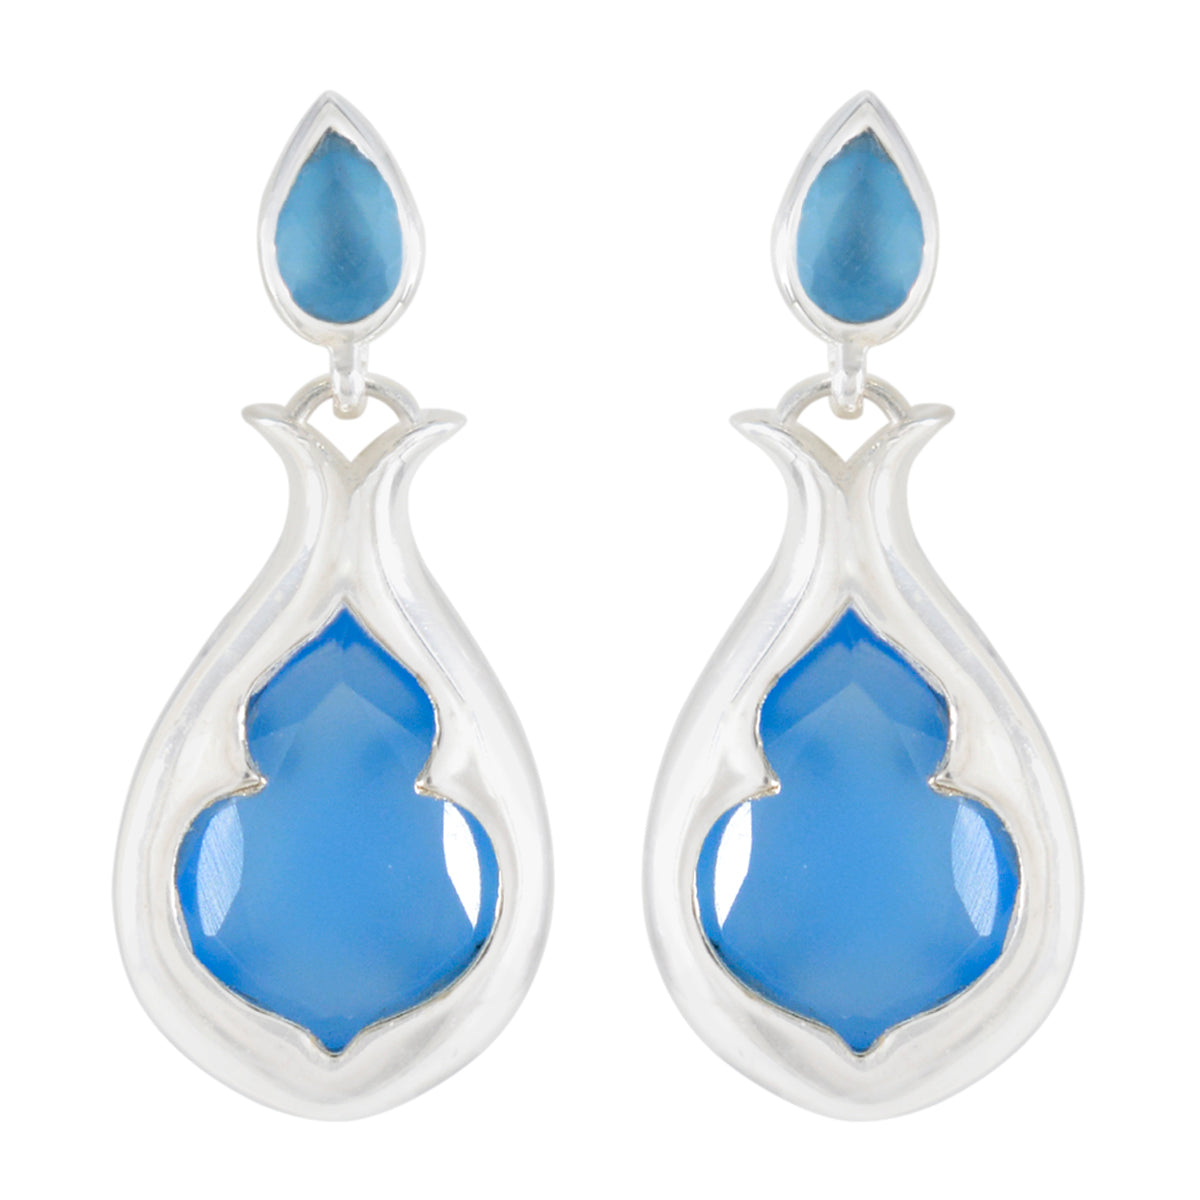 Riyo Drop-Dead Wunderschöner Sterling-Silber-Ohrring für Demoiselle, blauer Chalcedon-Ohrring, Lünettenfassung, blauer Ohrring-Ohrstecker